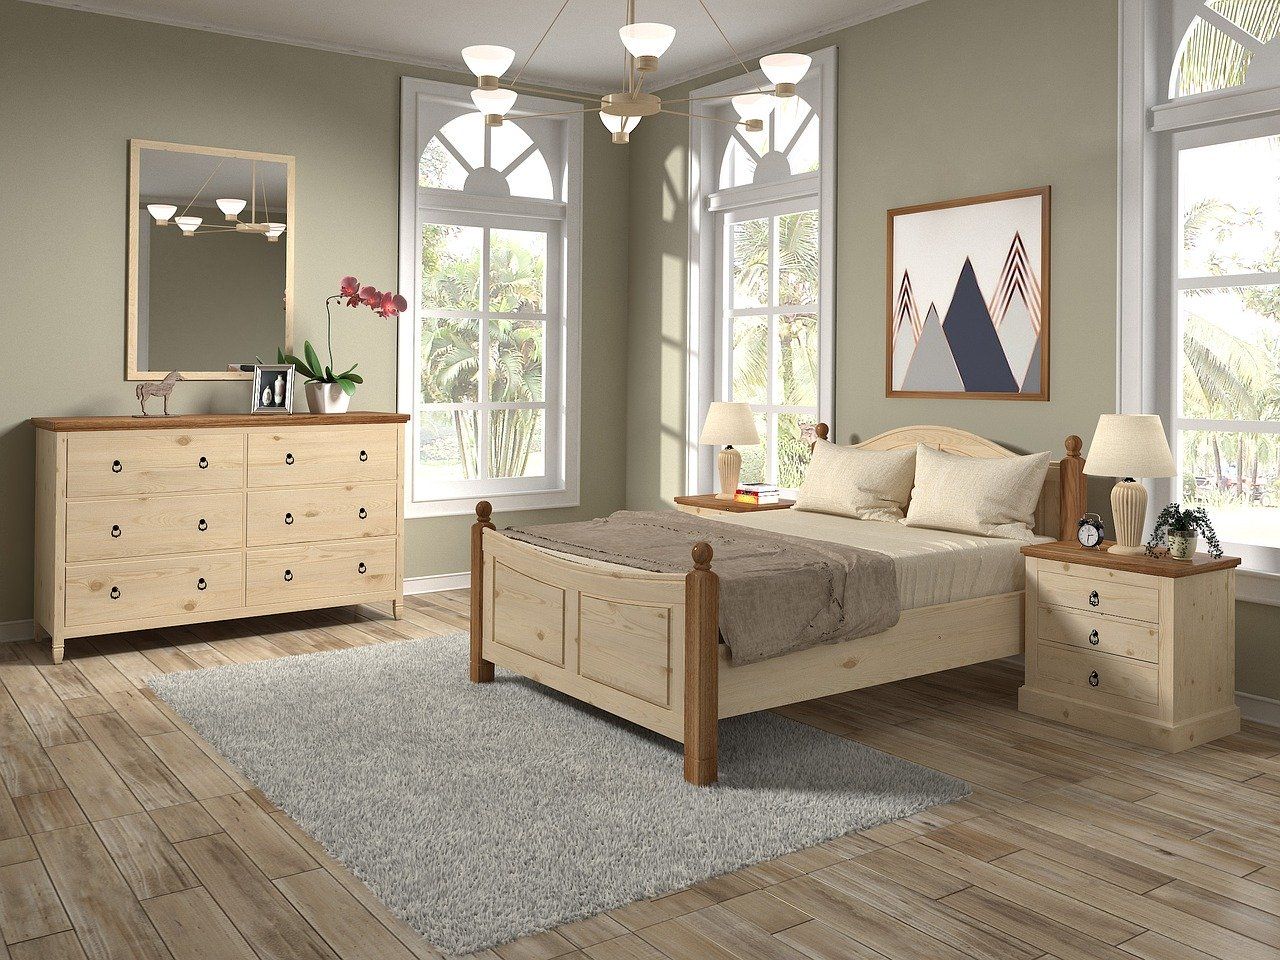 Drewniane łóżka – jakie mają zalety?